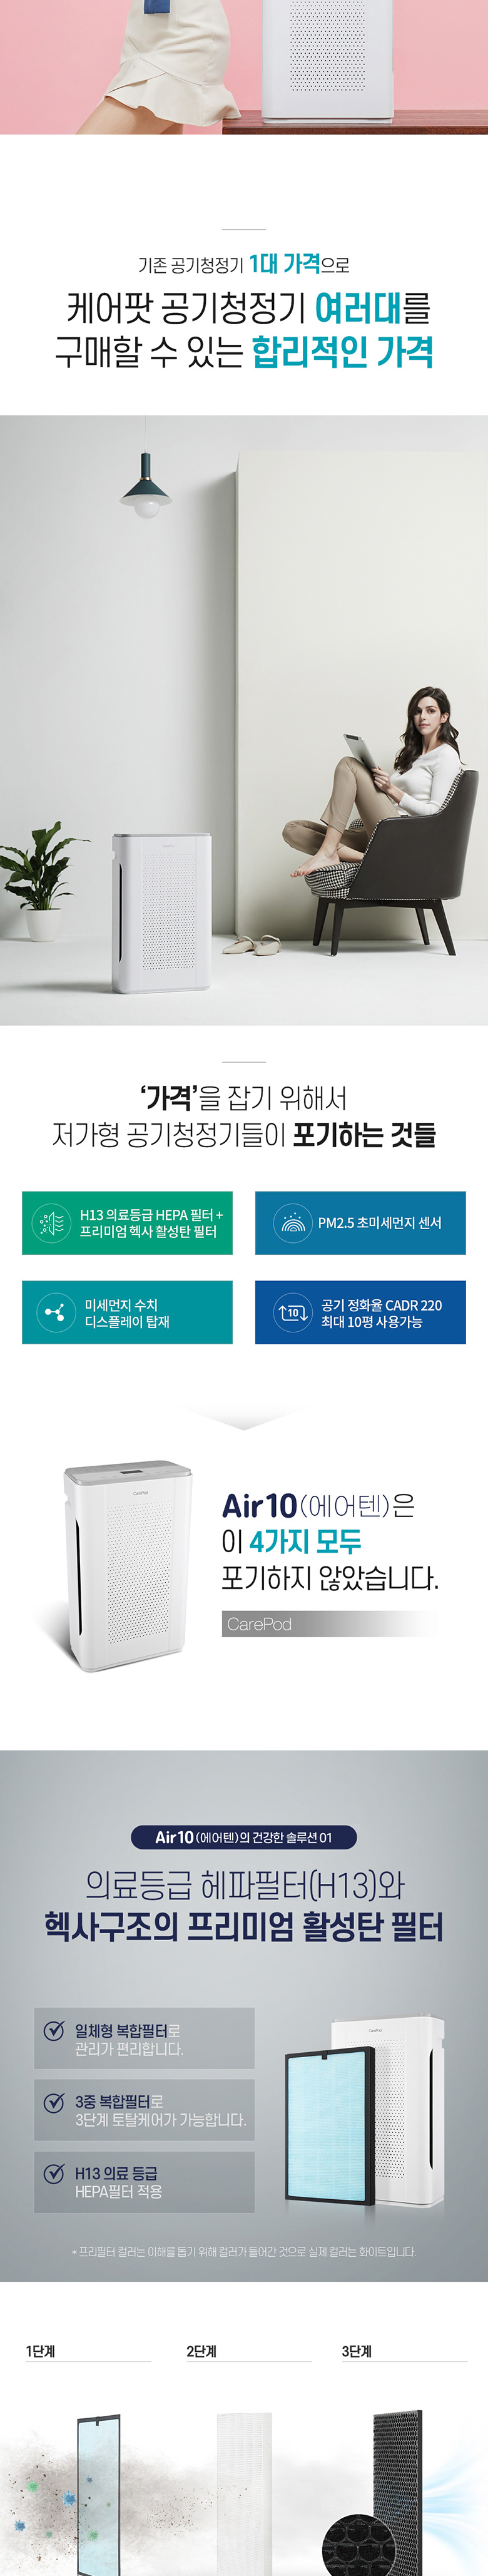 [케어팟] AIR10 공기청정기